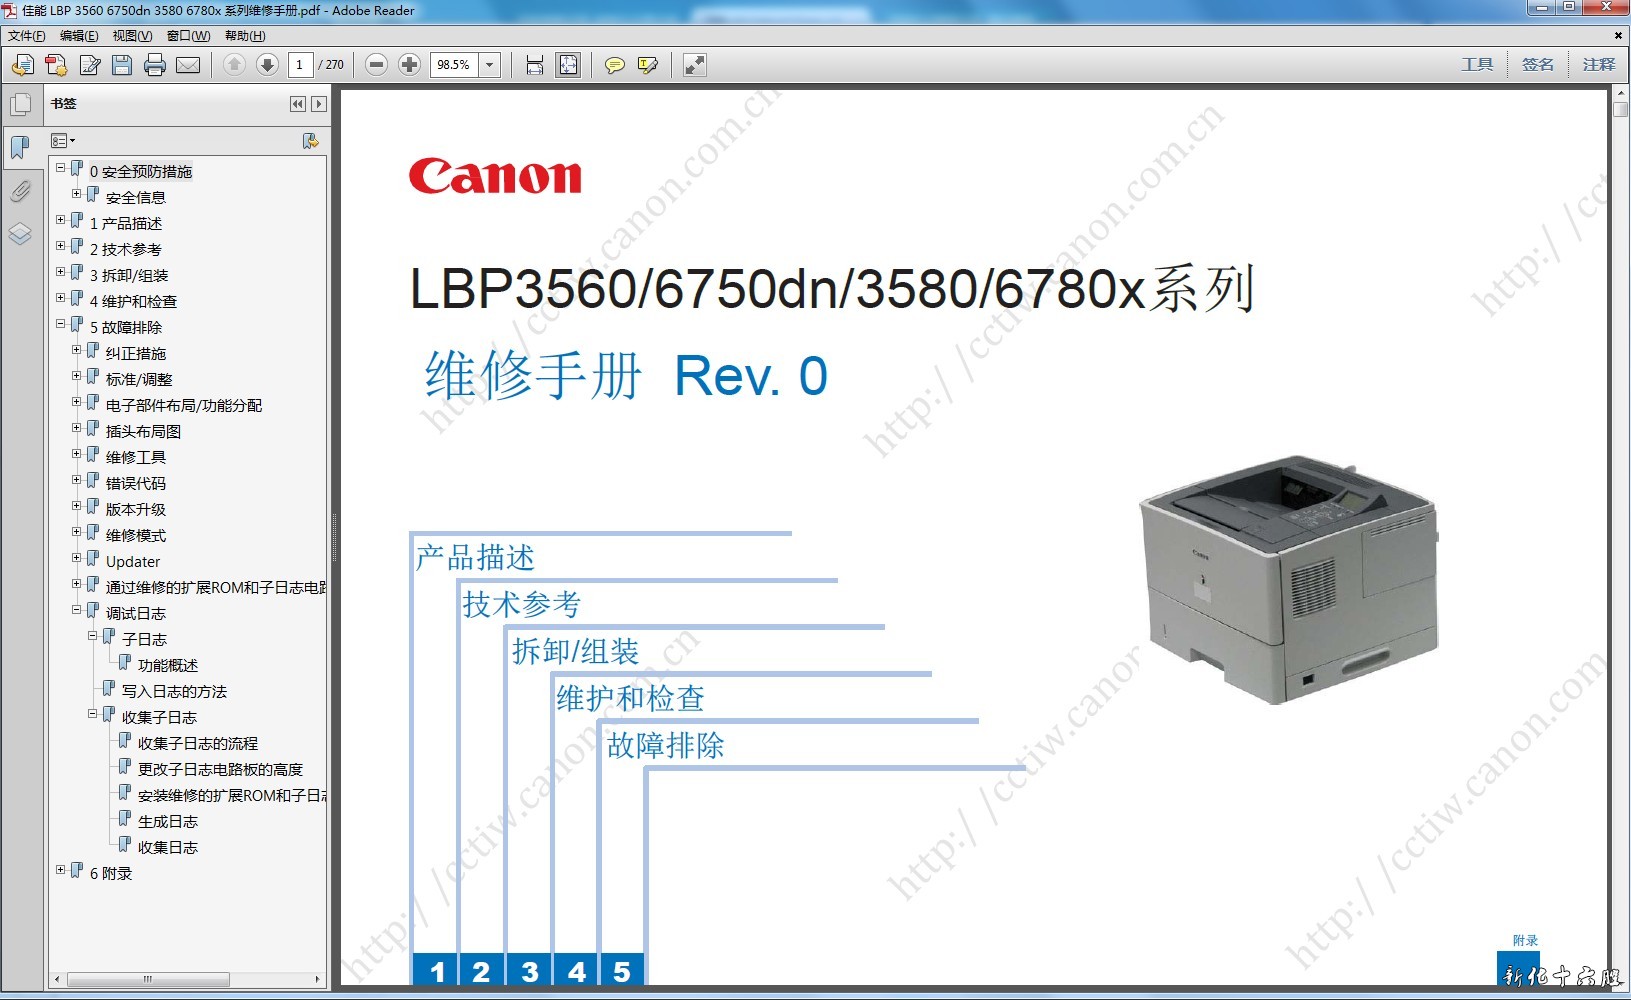 佳能 canon LBP 3560系列打印机中文维修手册.jpg